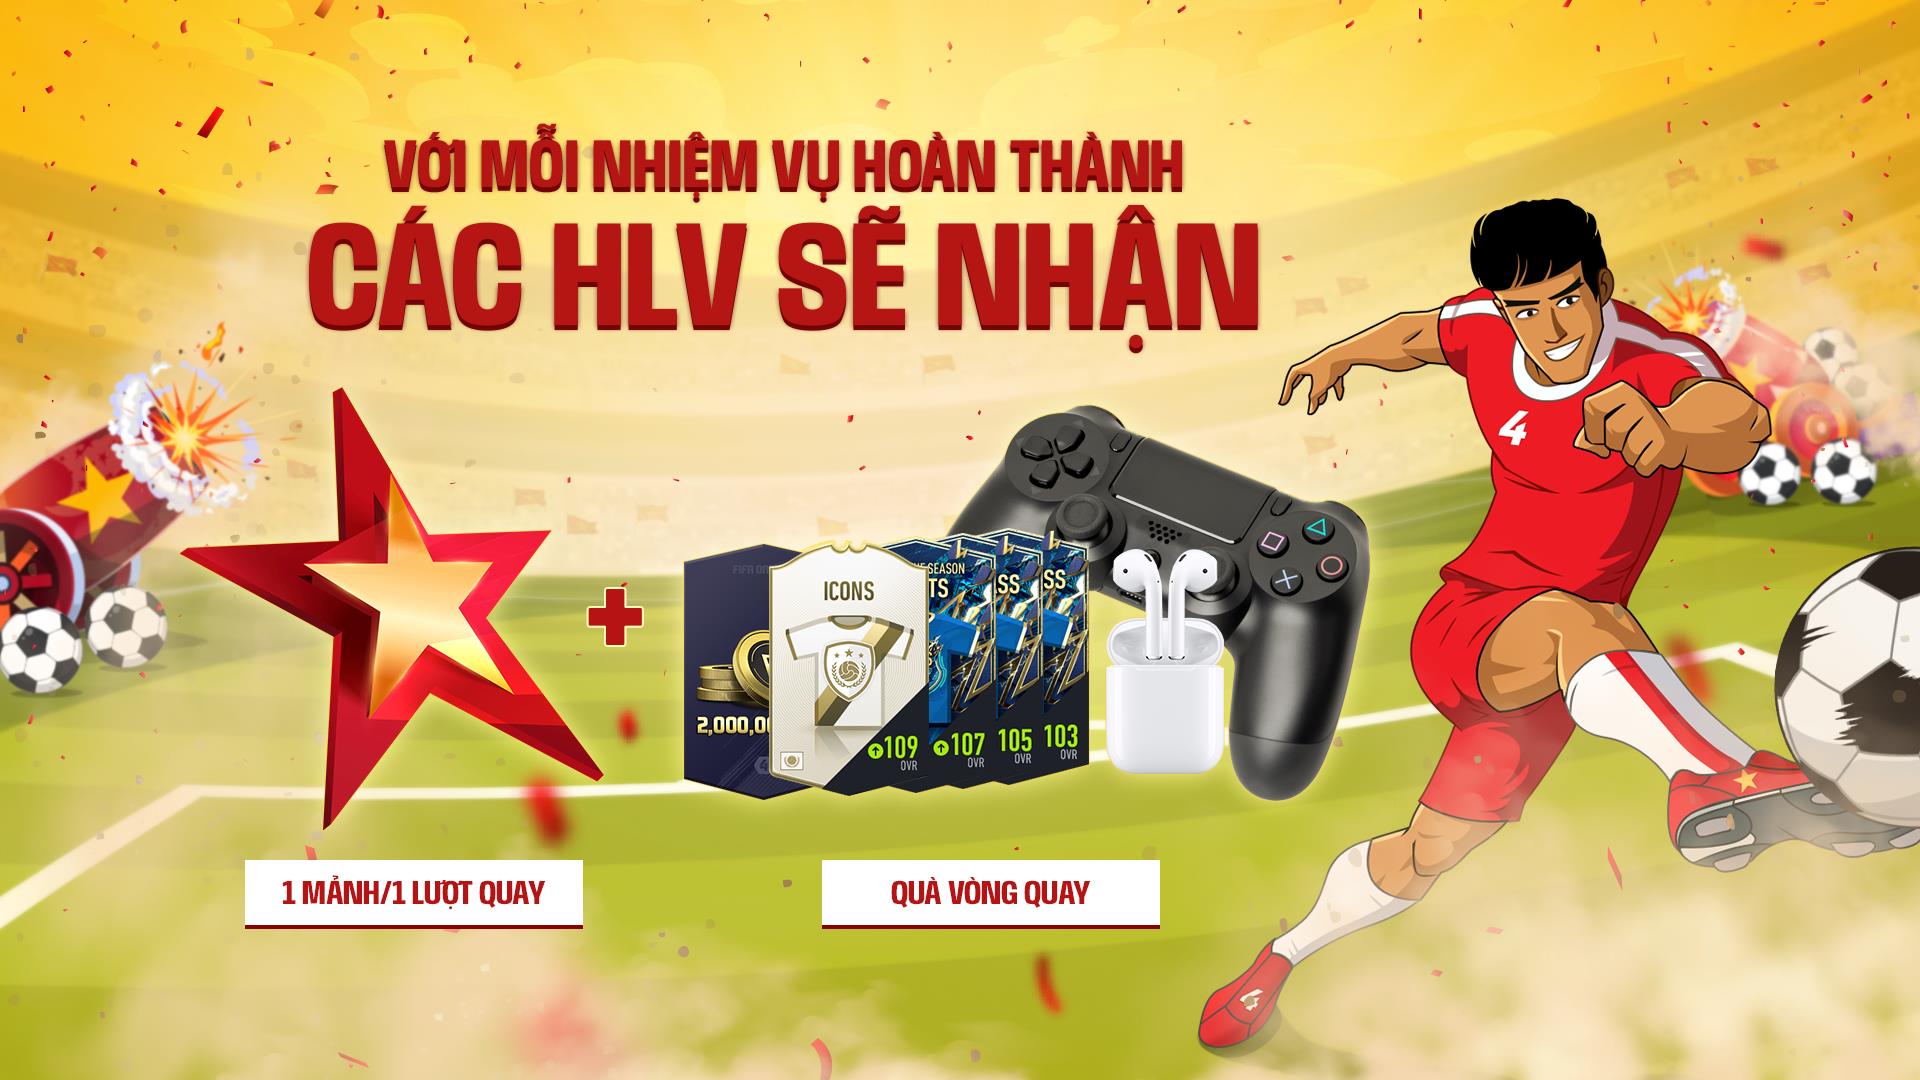 Người chơi FIFA Online có cơ hội nhận Airpod, Tay Cầm PS4 miễn phí nhân dịp Quốc Khánh - Ảnh 3.